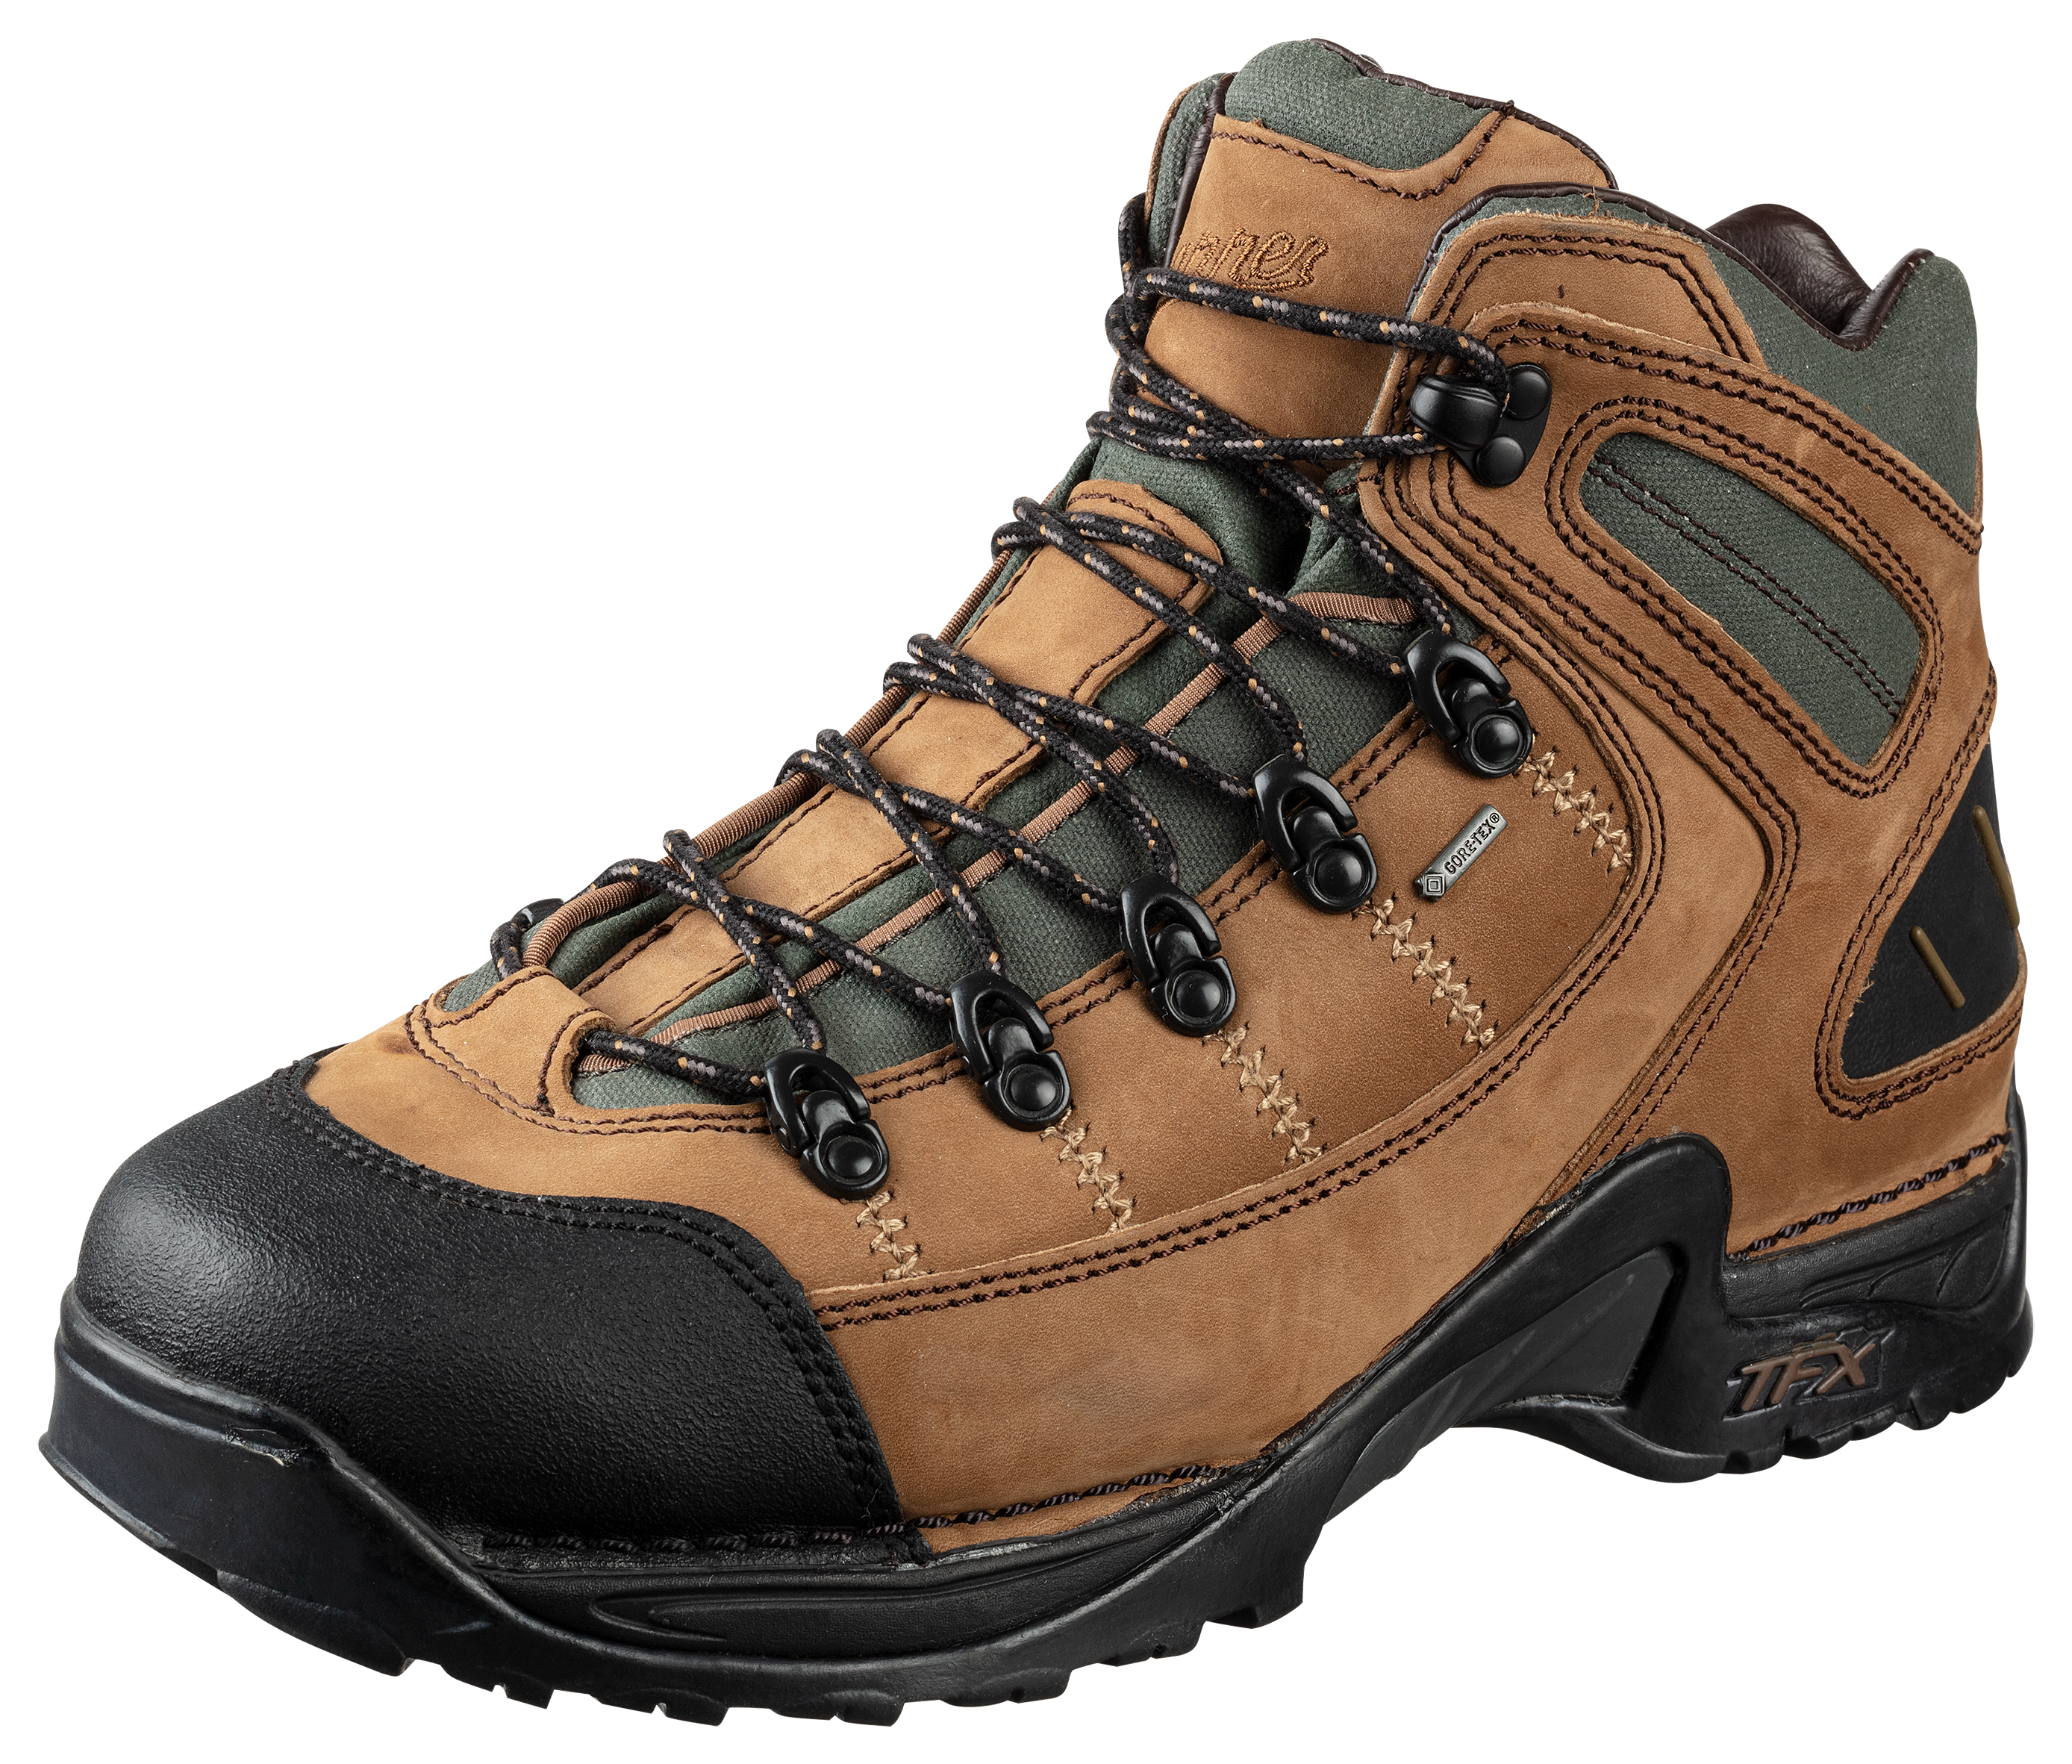 Danner 453 GORE-TEX Waterproof Hiking Boots for Men - Dark Tan - 11M